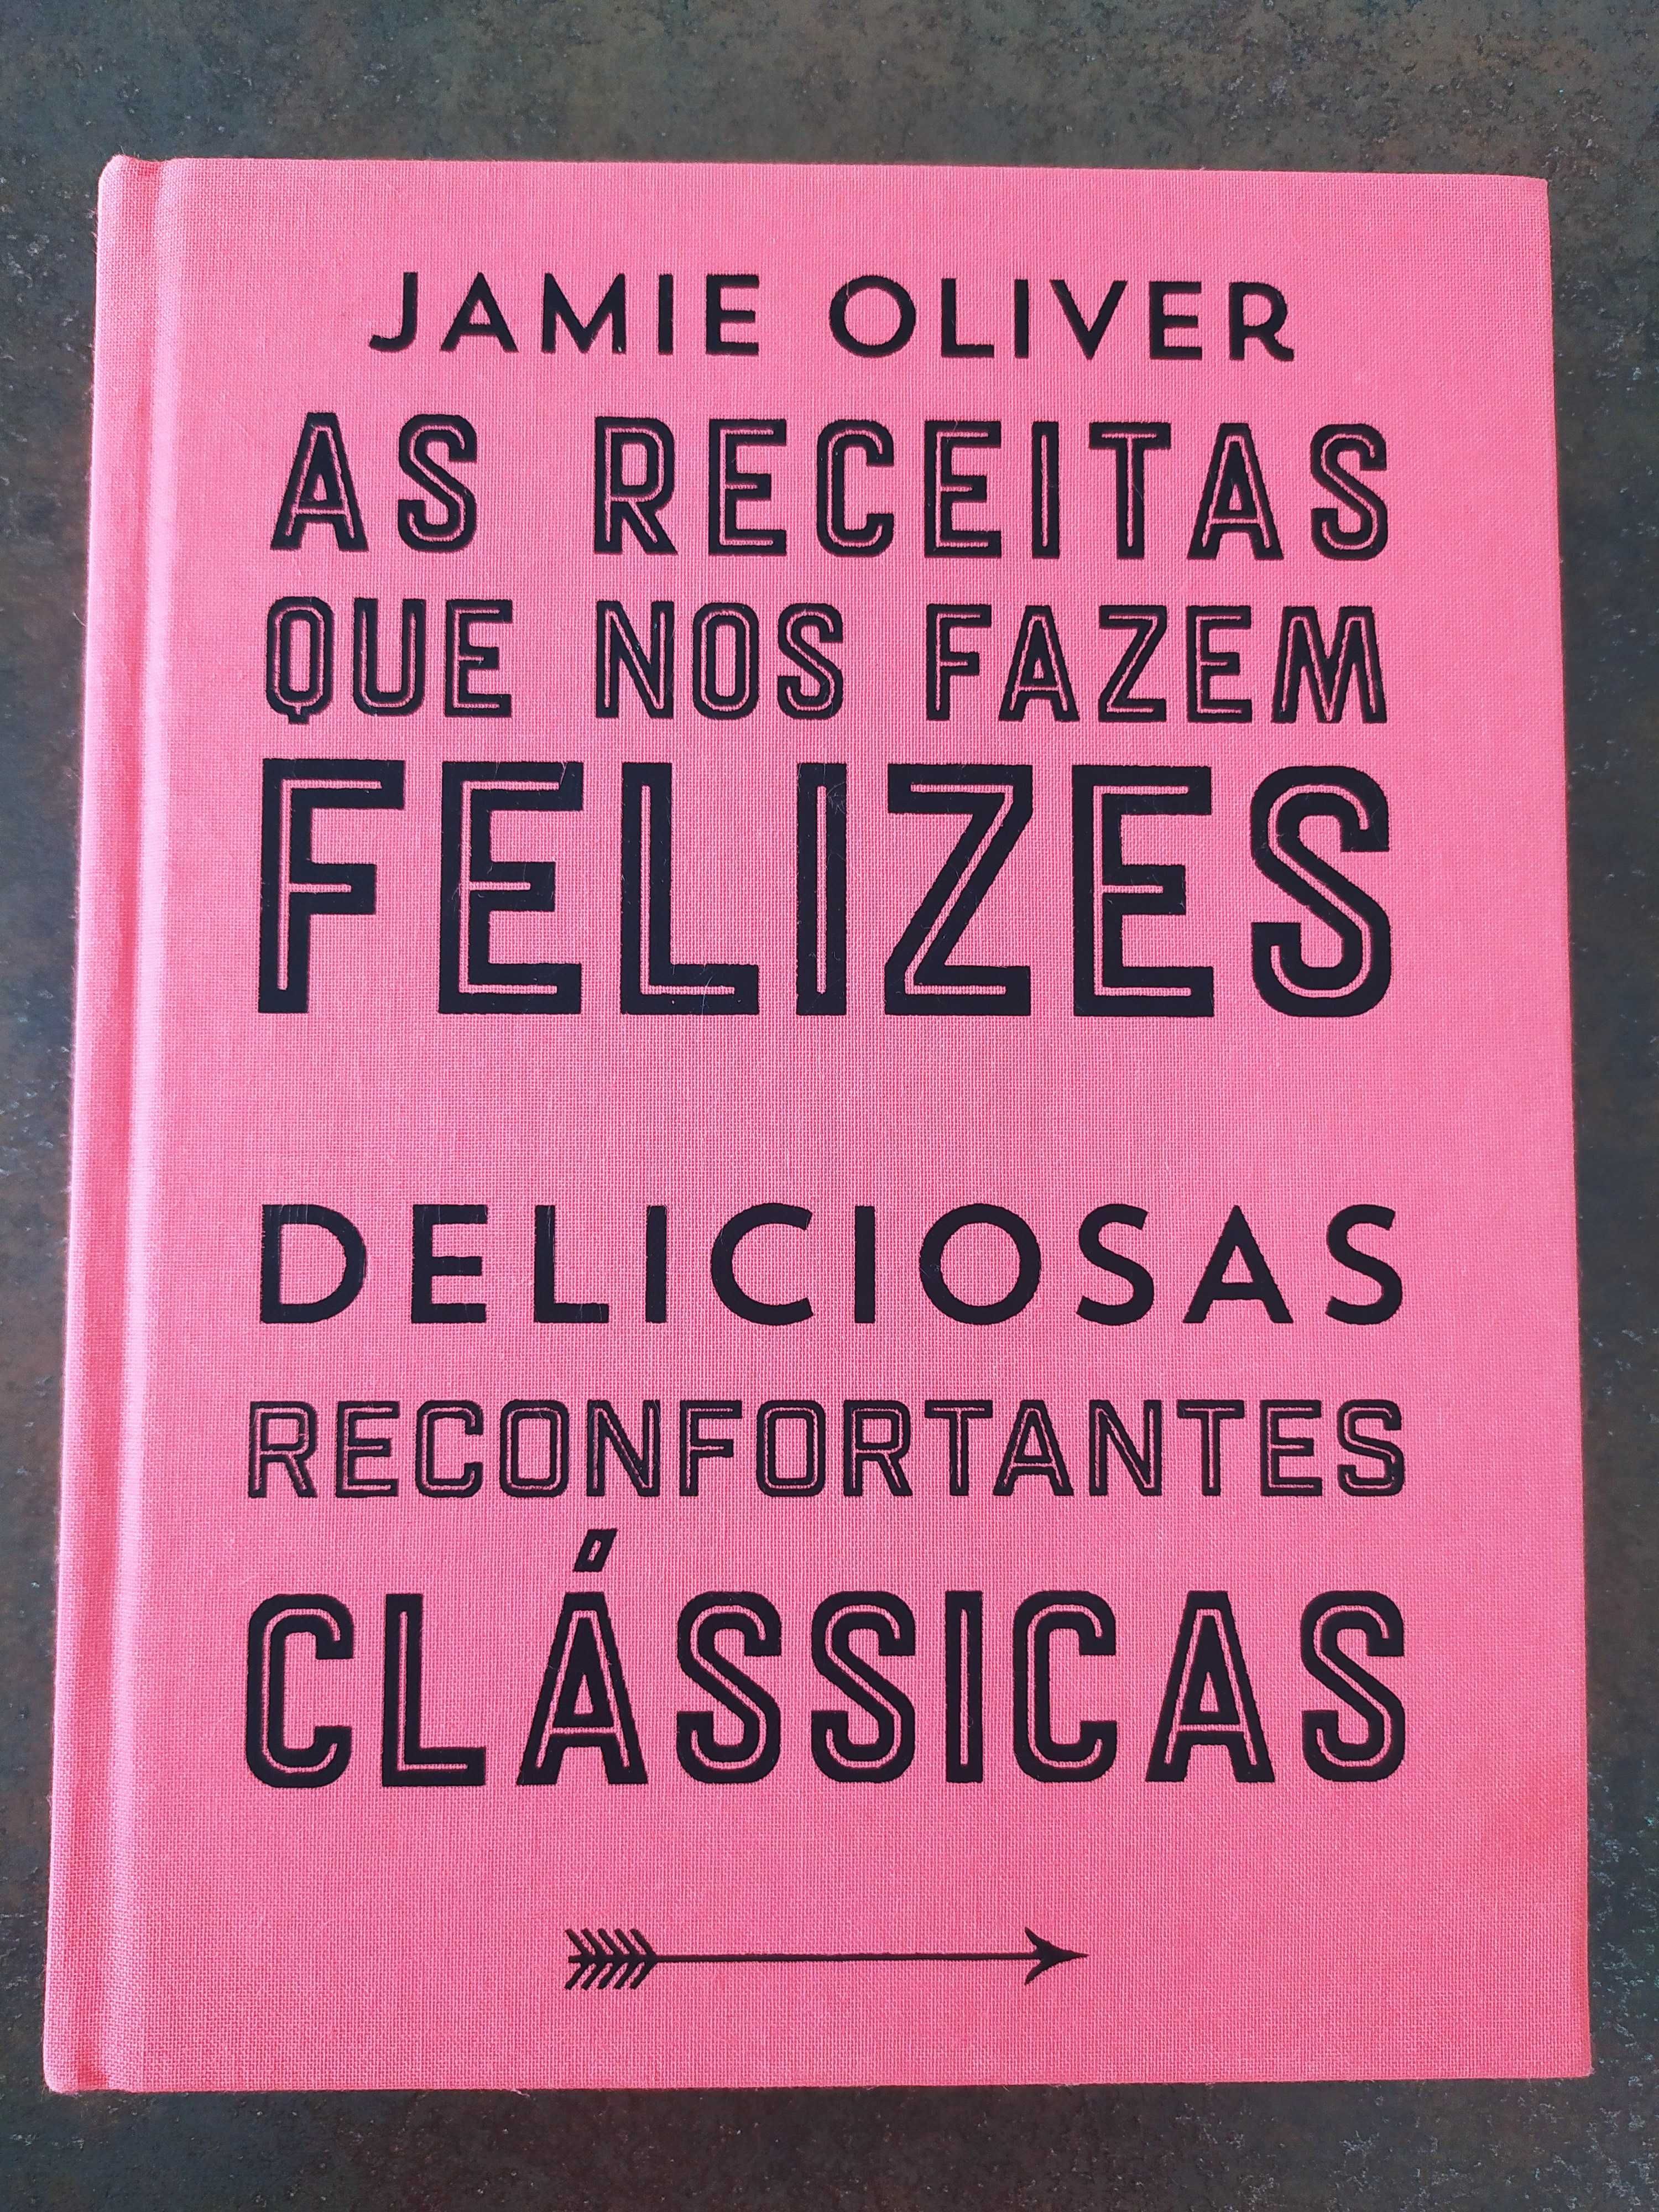 Livro culinária do chef Jamie Oliver